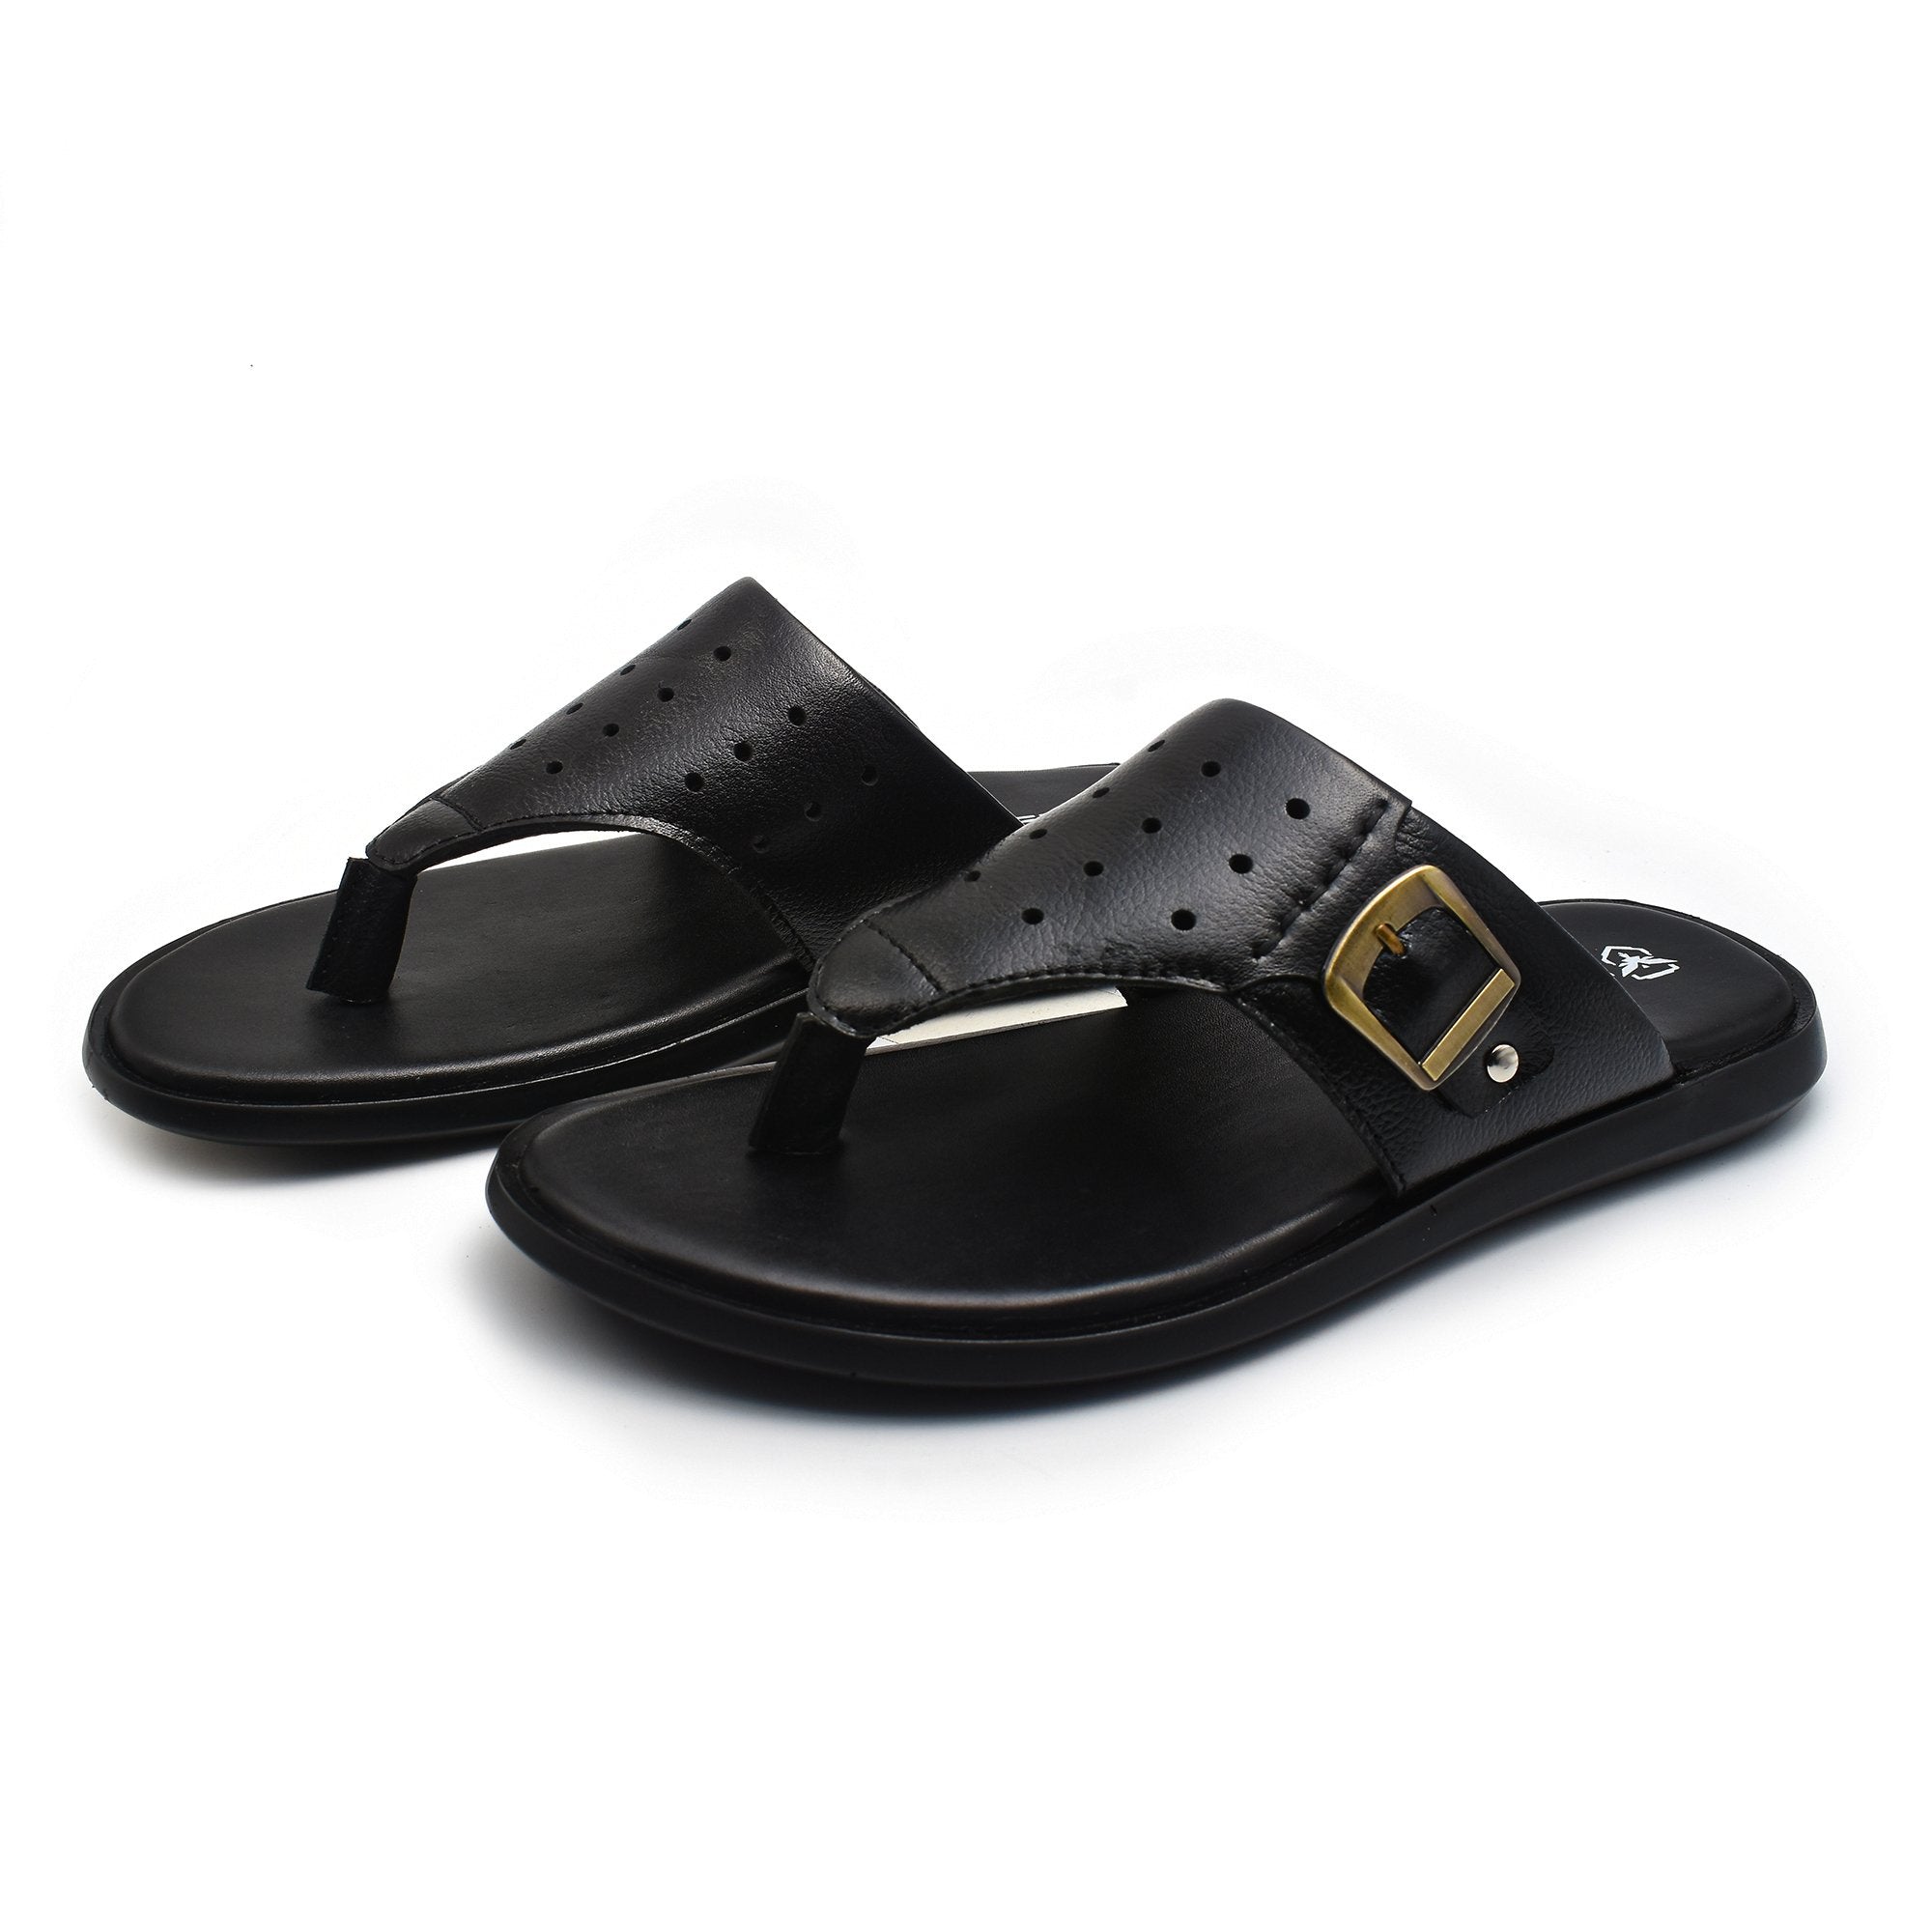 Zays Leather Sandal For Men - ZAYS-A-55